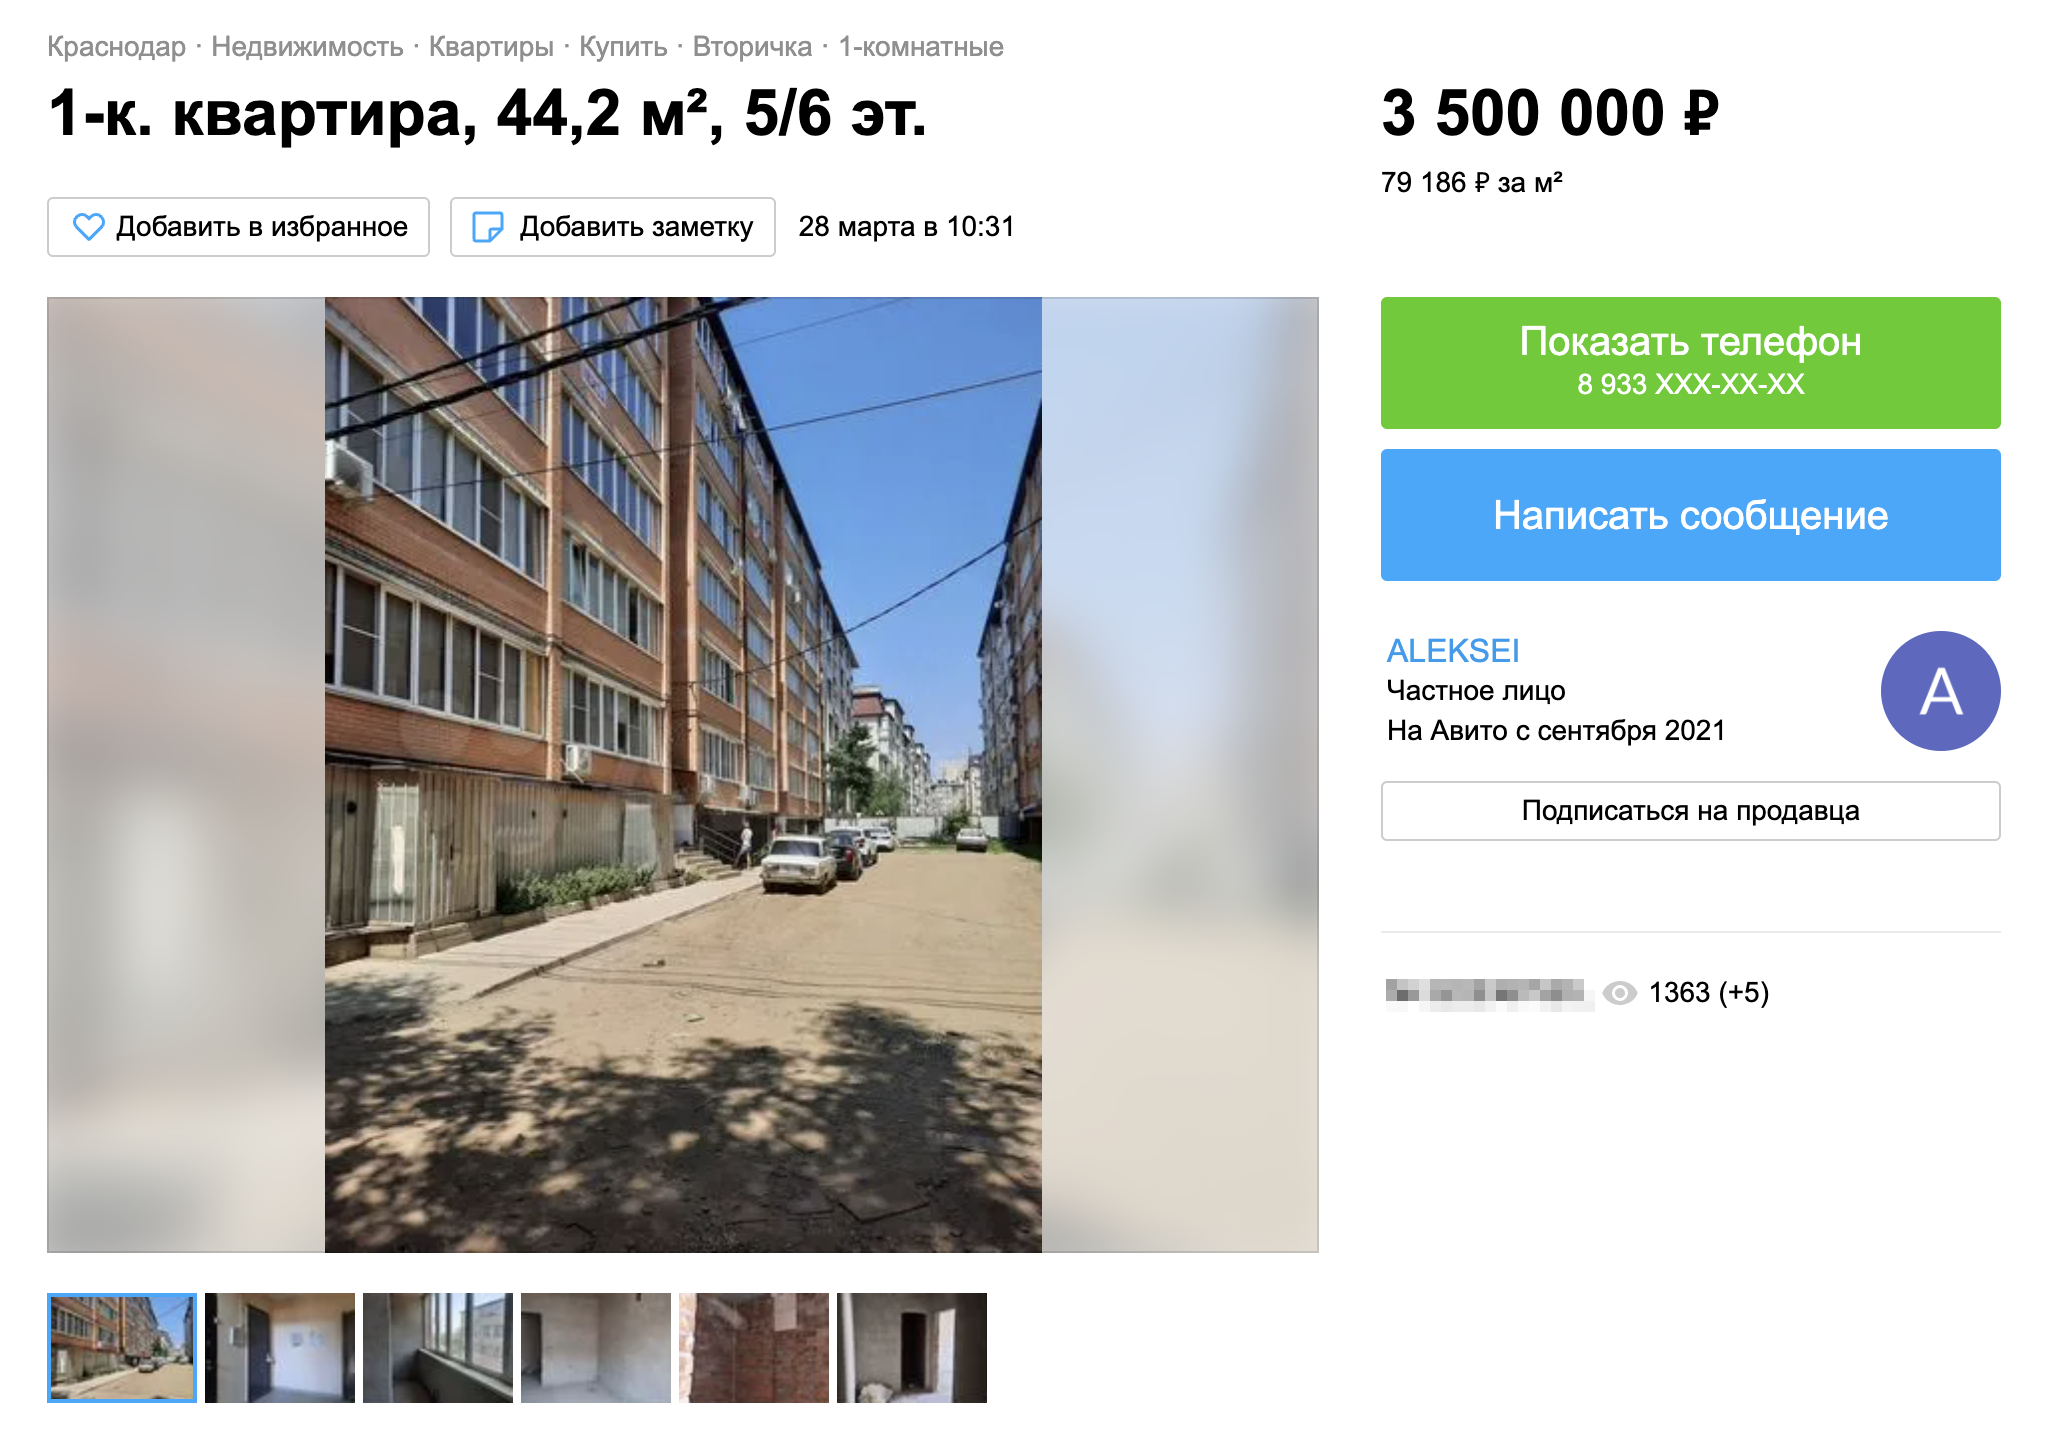 И сейчас стоимость однокомнатной квартиры в Музыкальном микрорайоне невысокая — 3⁠—⁠3,5 млн рублей